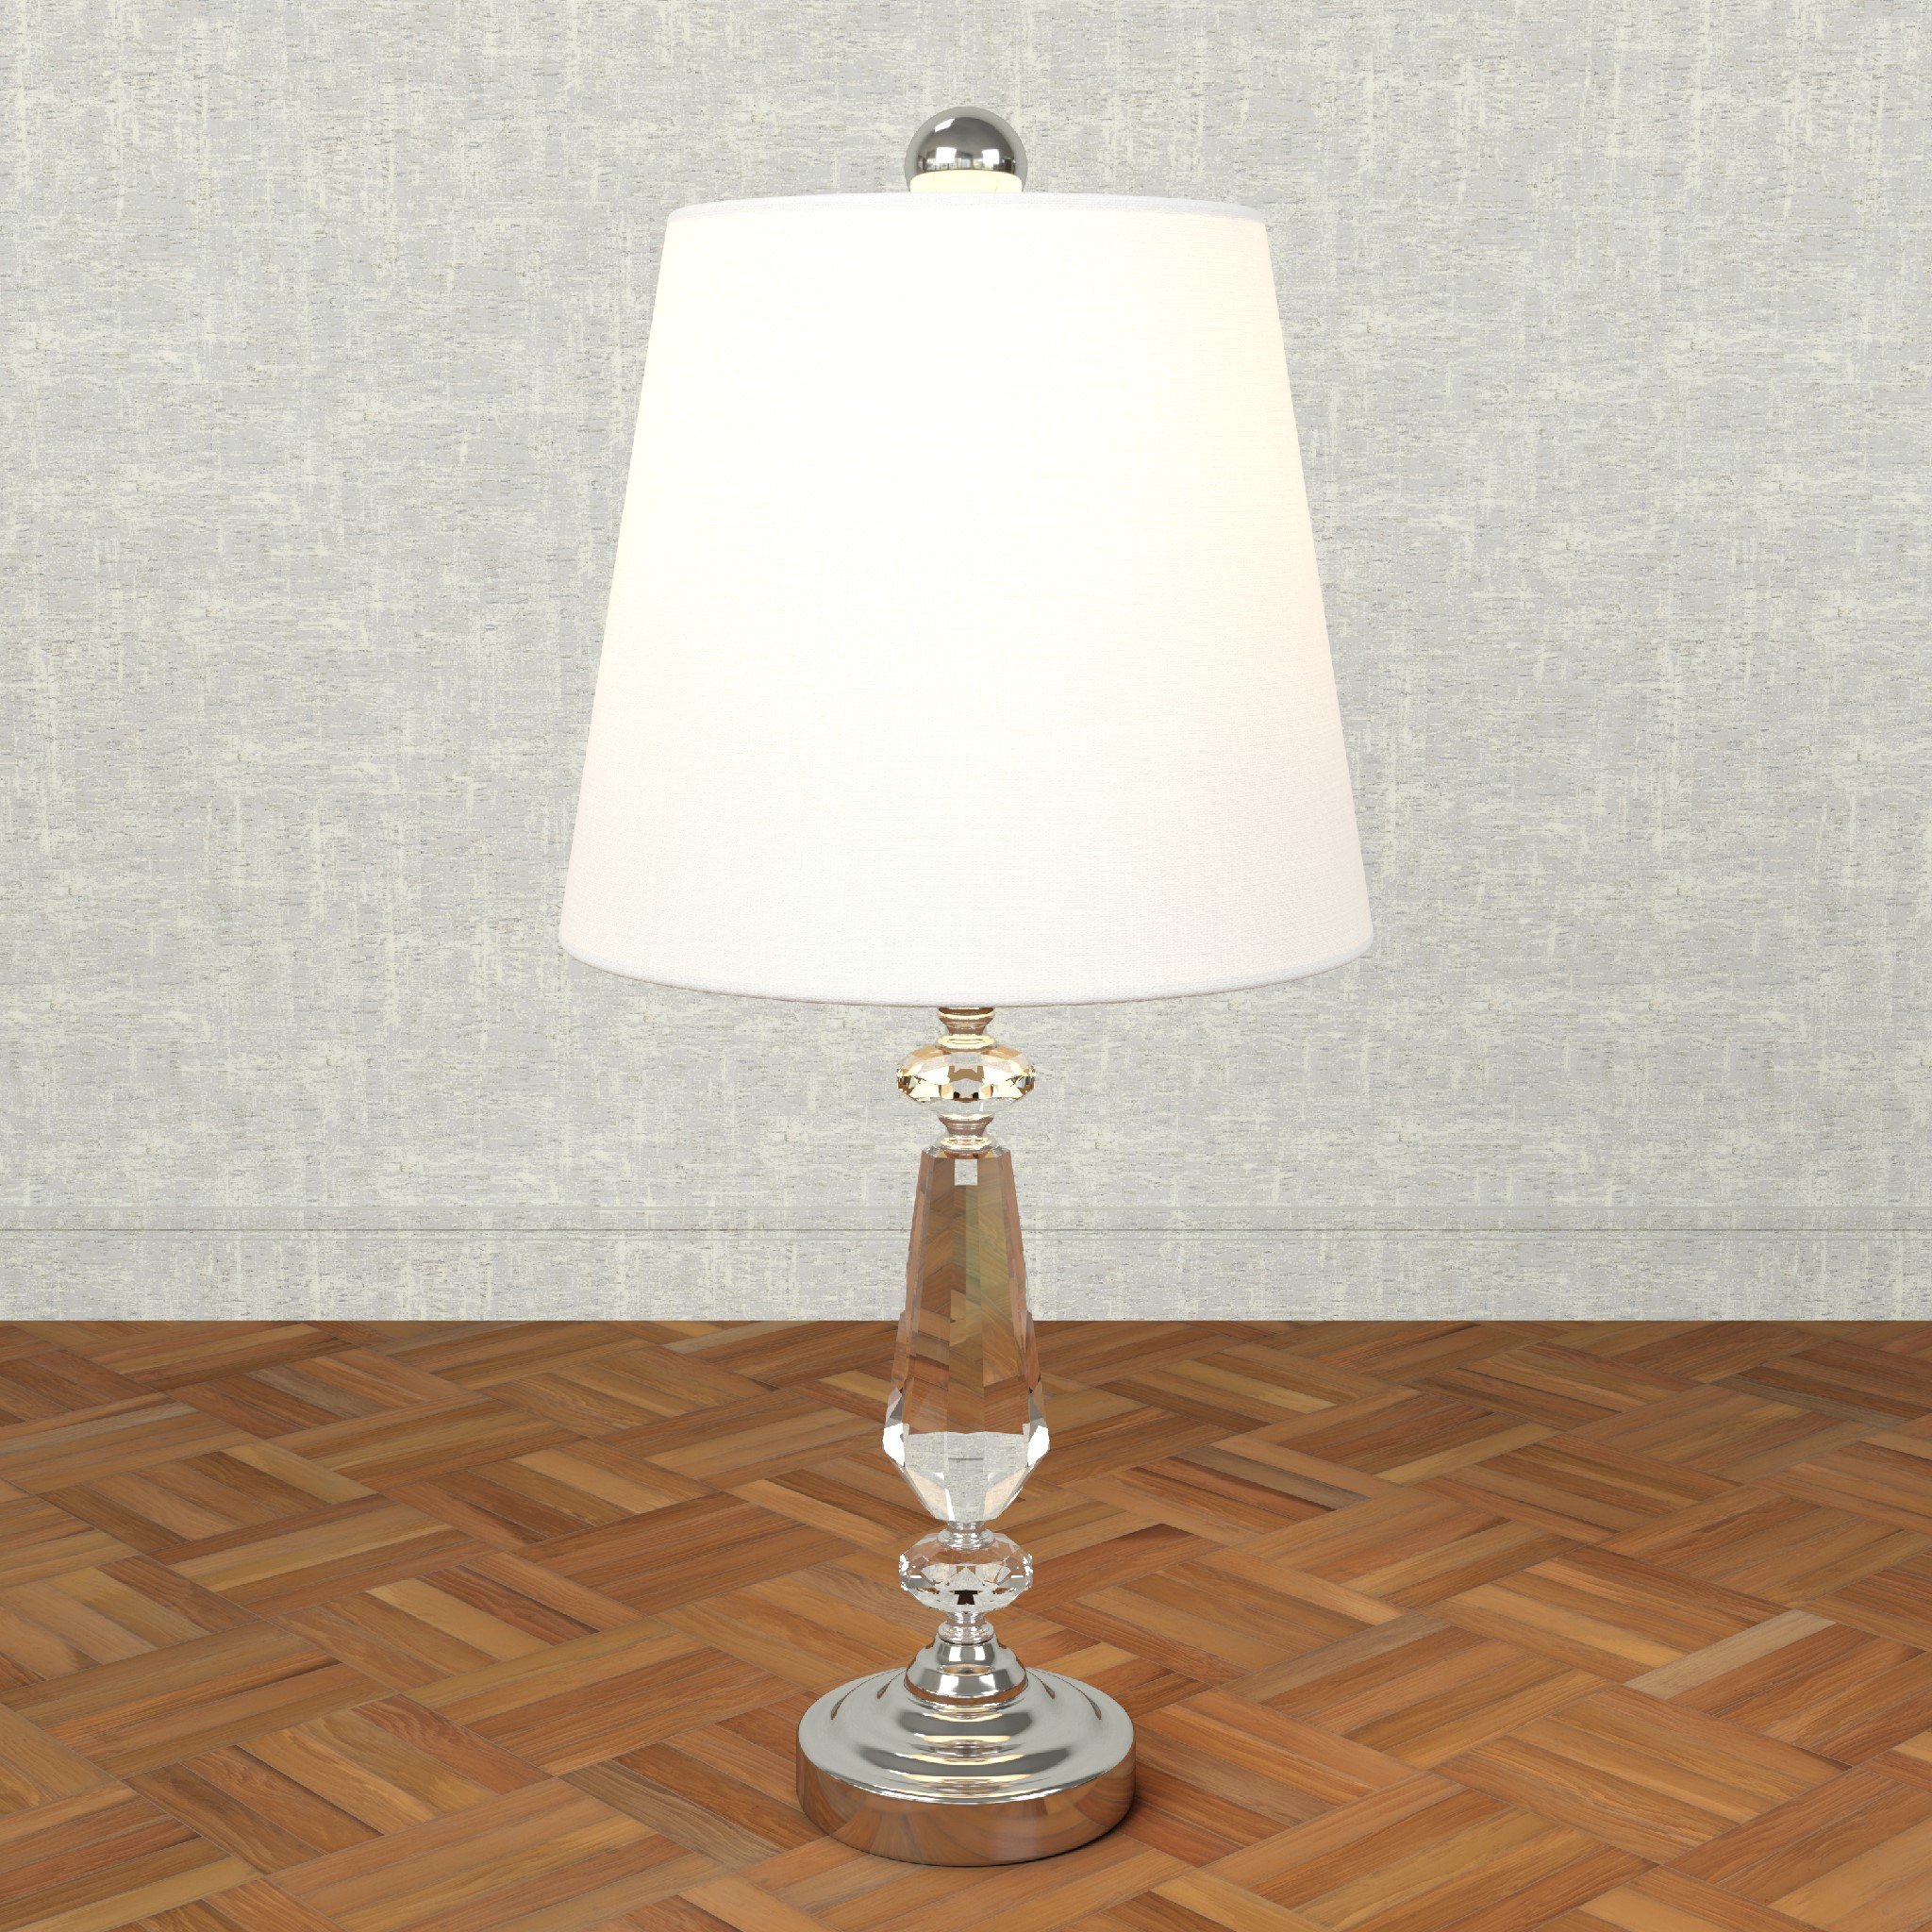 Lamp 2 3D render 2